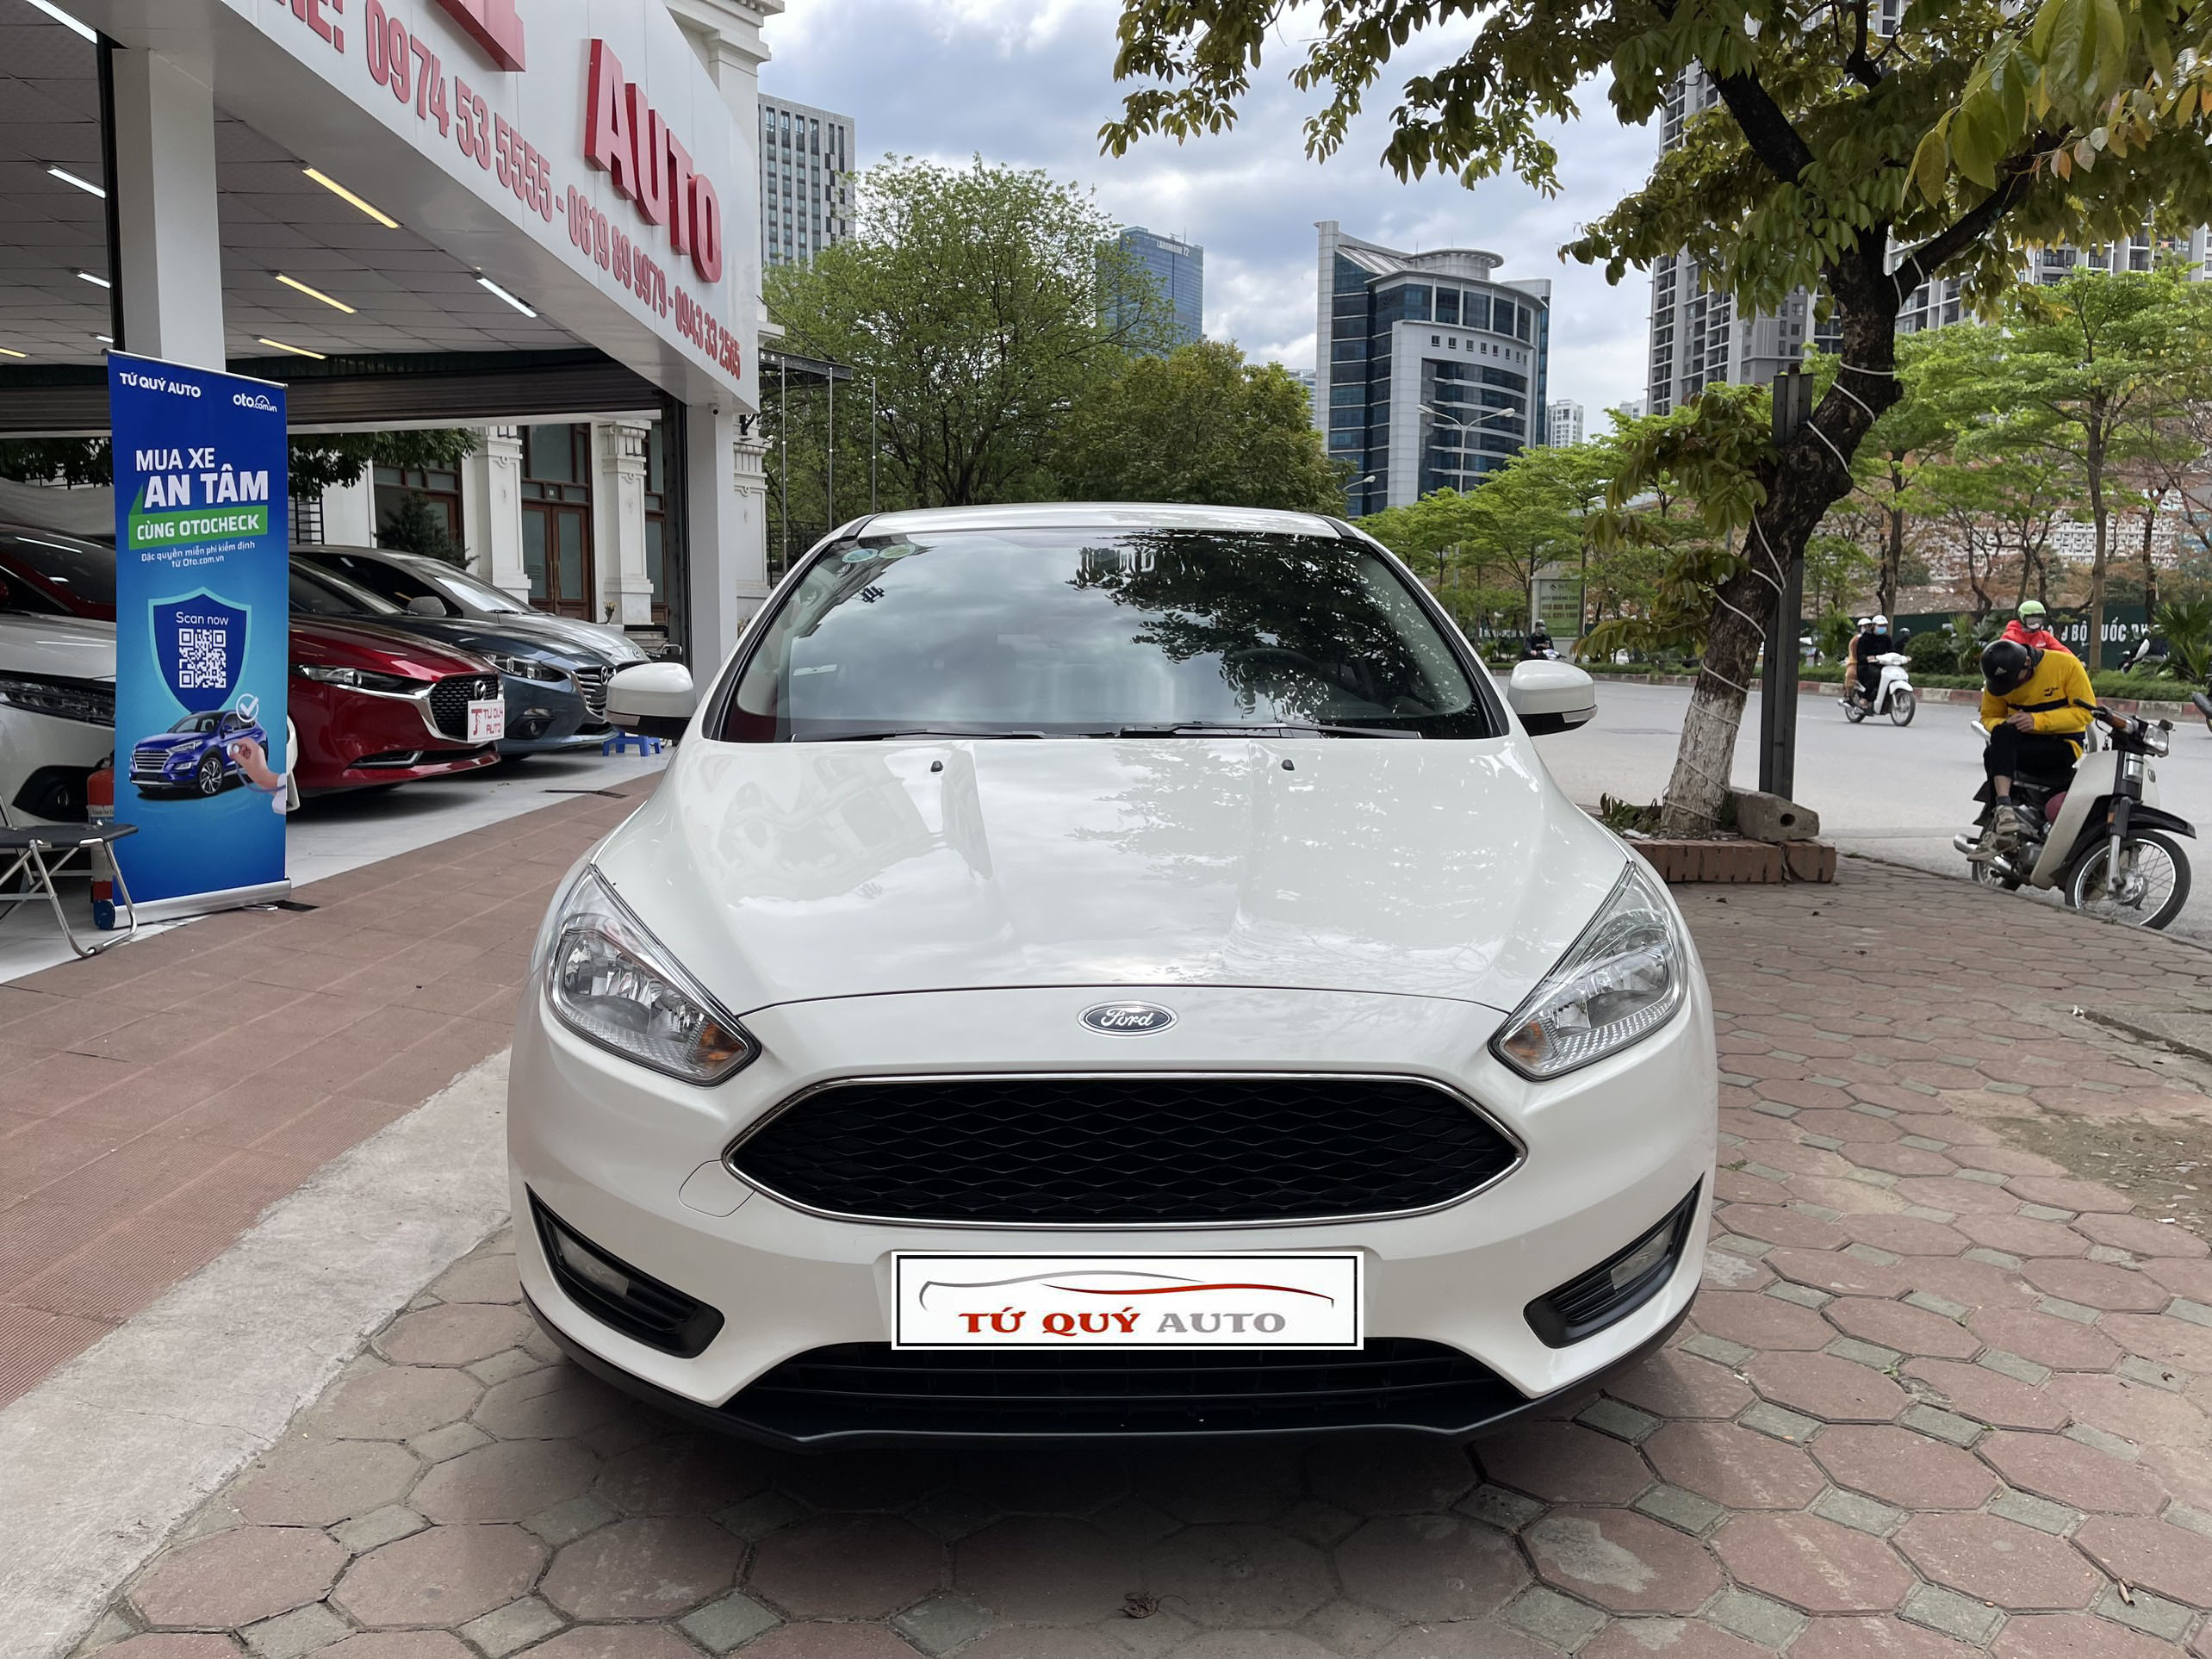 Hình ảnh chi tiết xe Ford Focus 2019 hoàn toàn mới